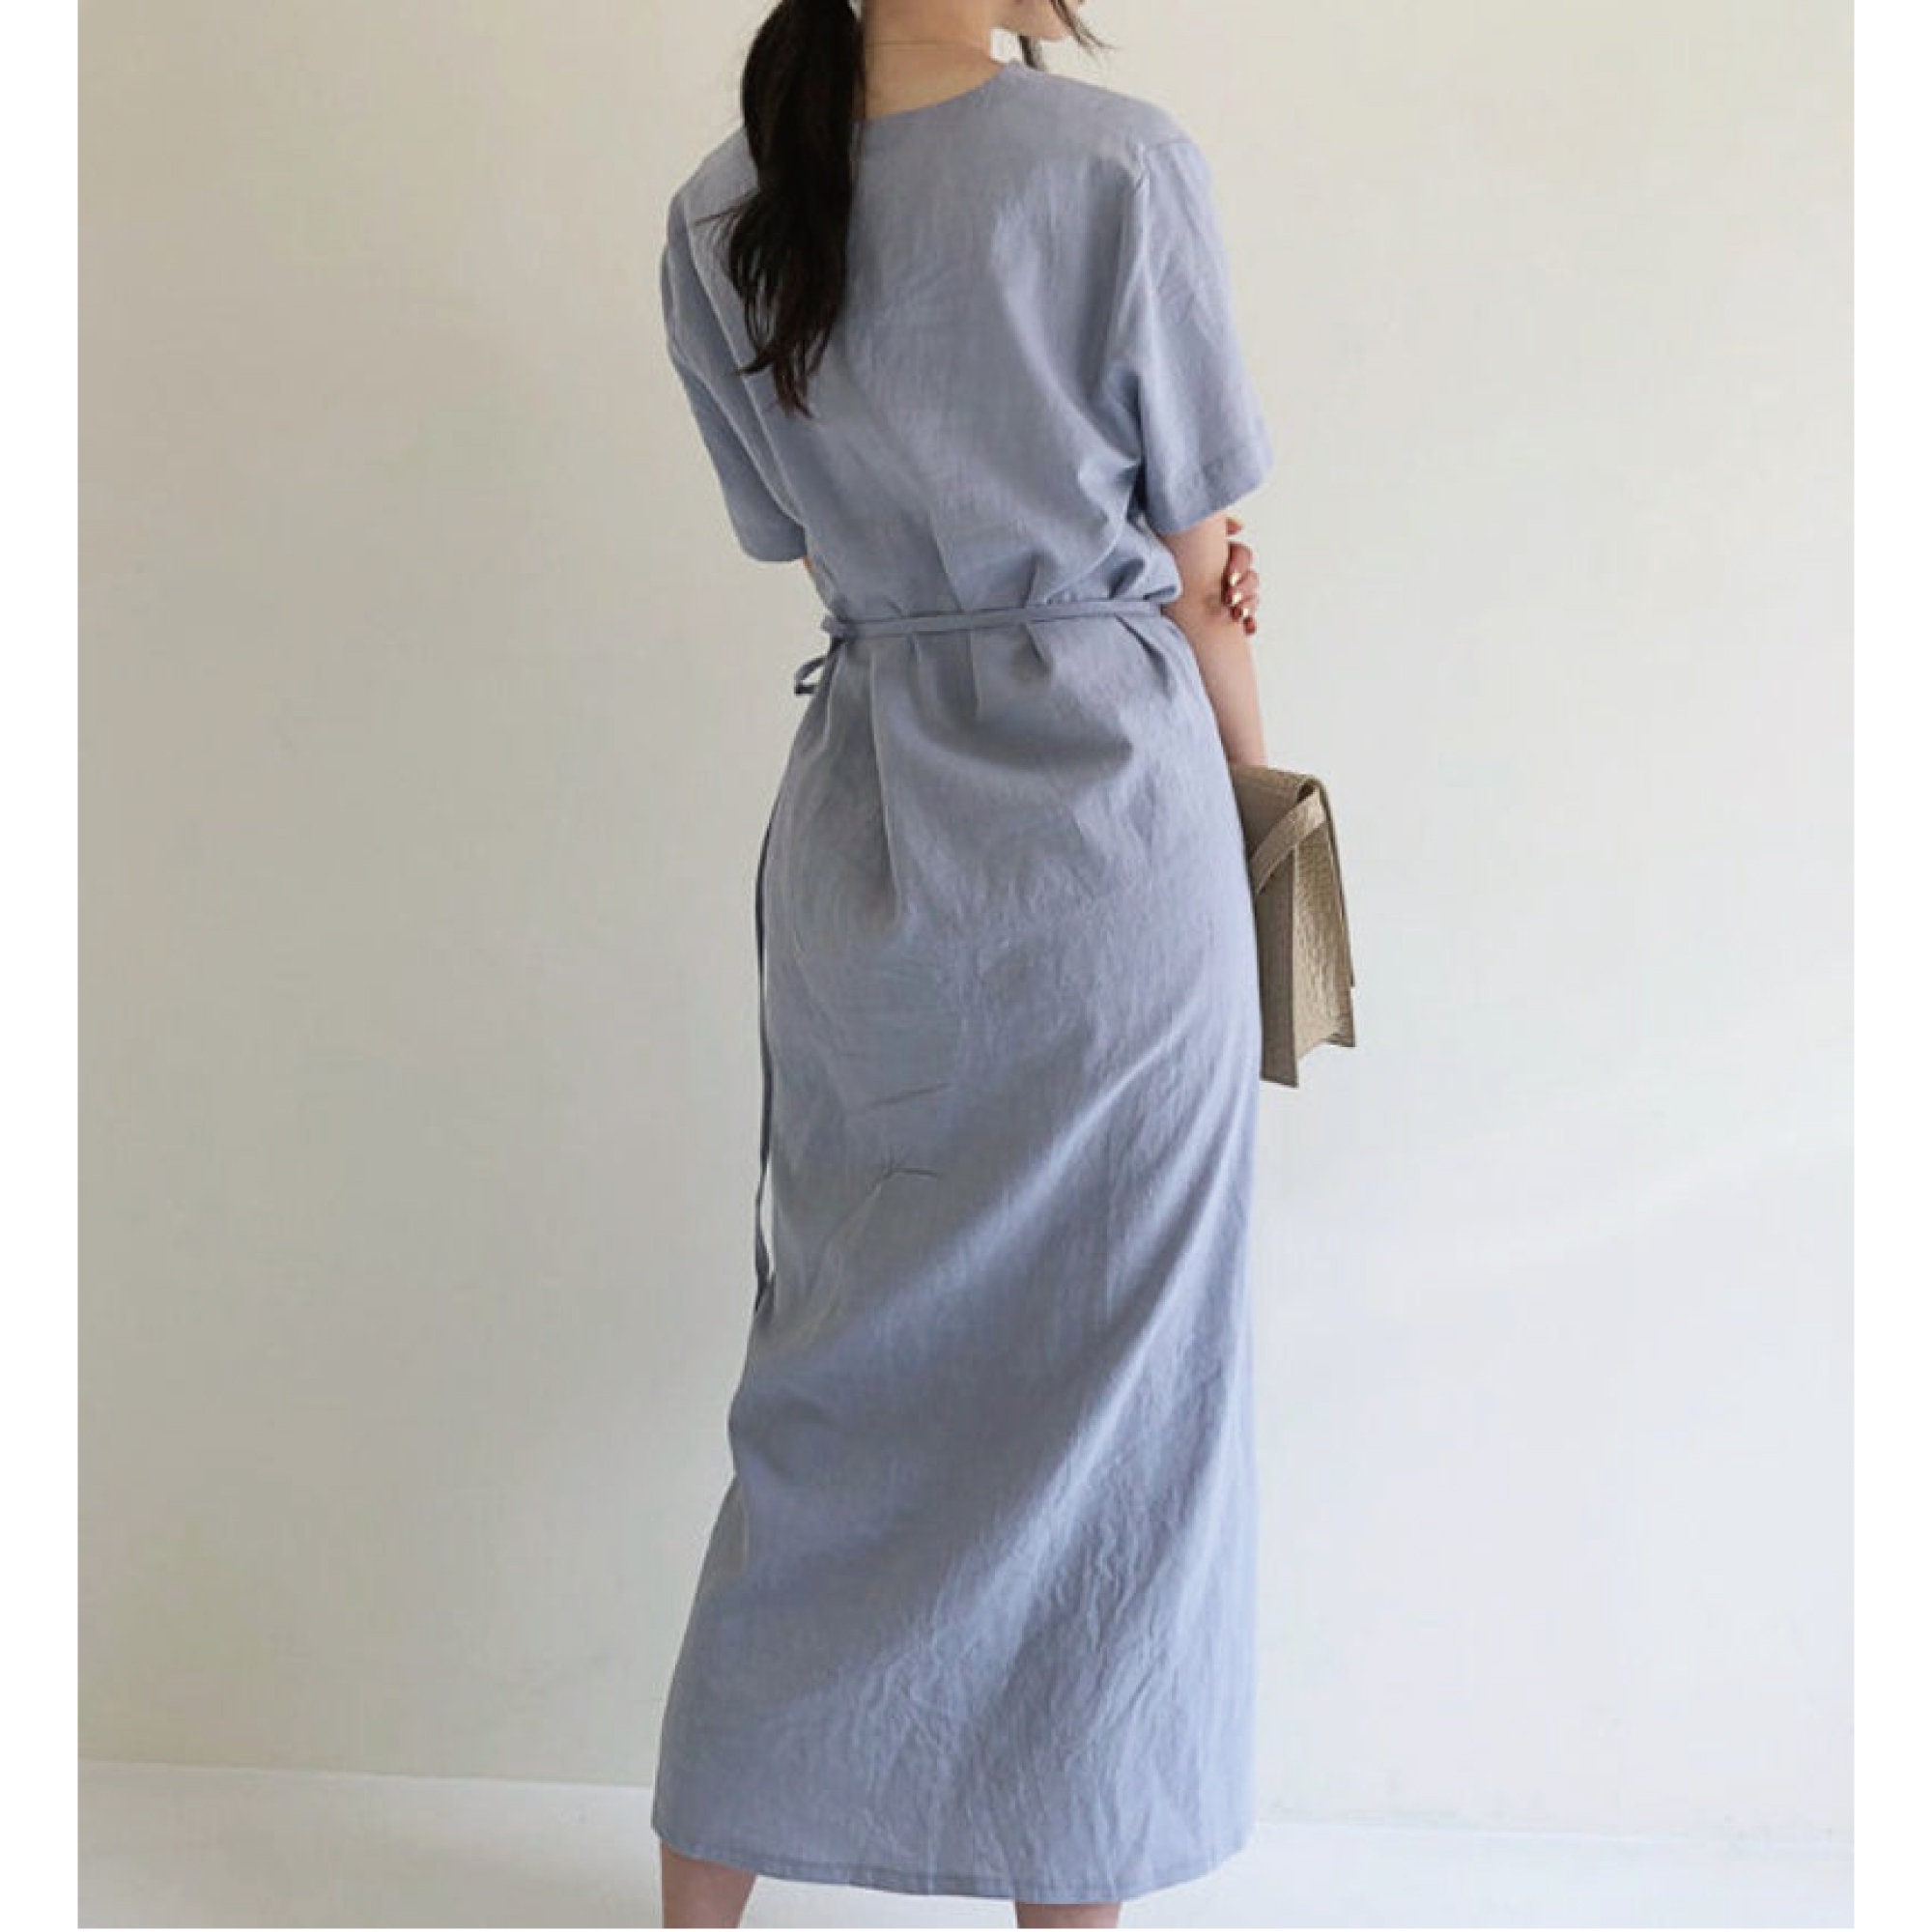 Linen Dress / Linen Clothing / Linen Wrap Dress / Summer Dress - Etsy